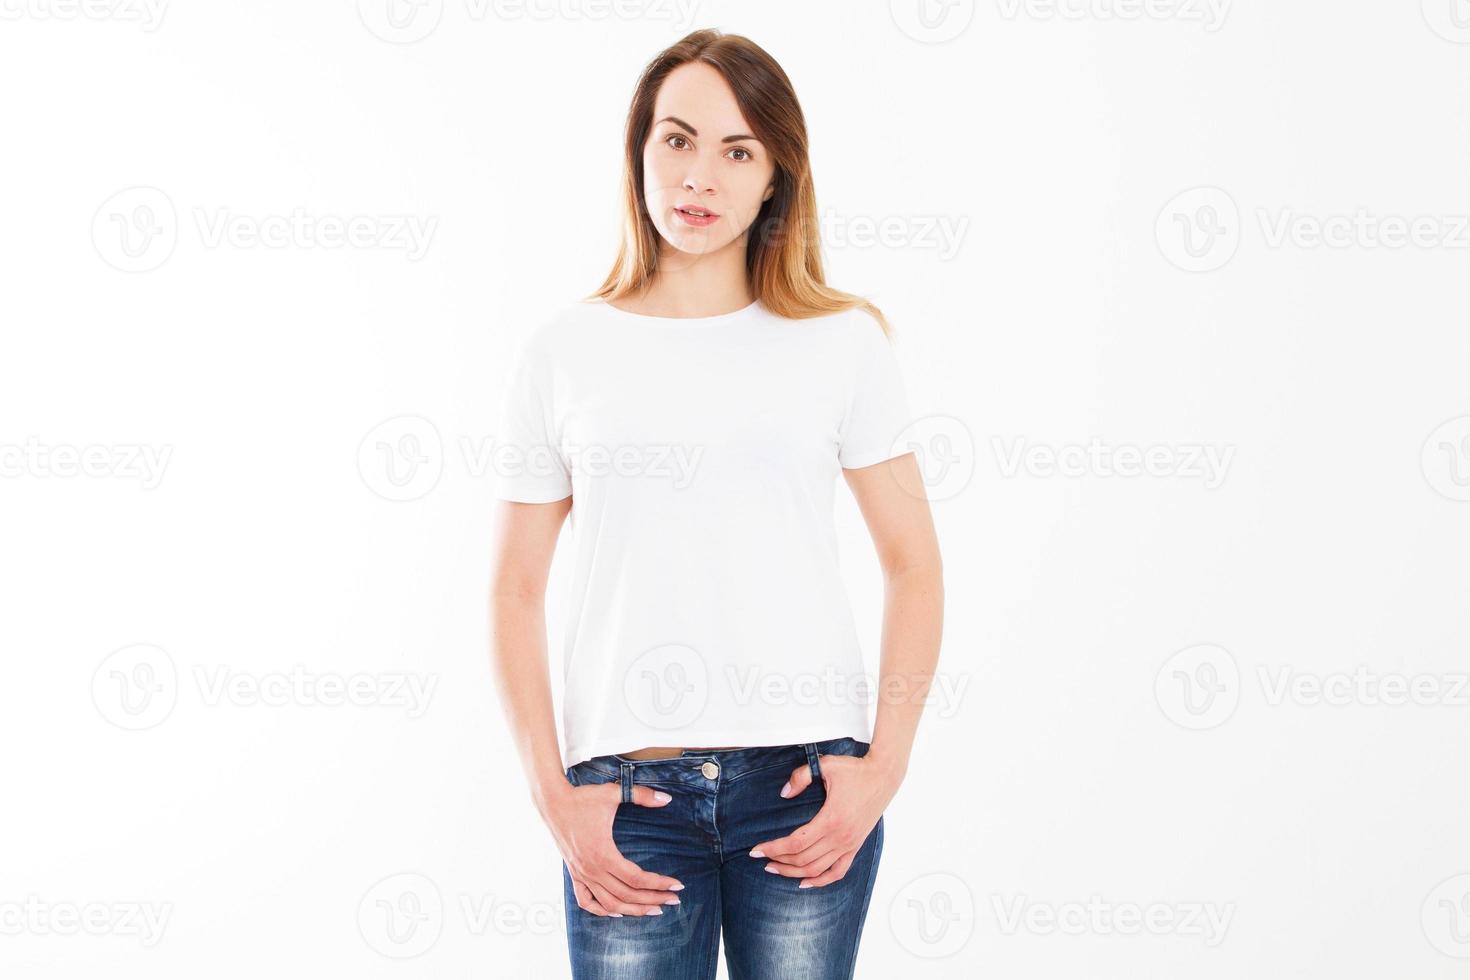 maqueta de camiseta blanca vacía, mujer joven feliz sobre un fondo blanco foto